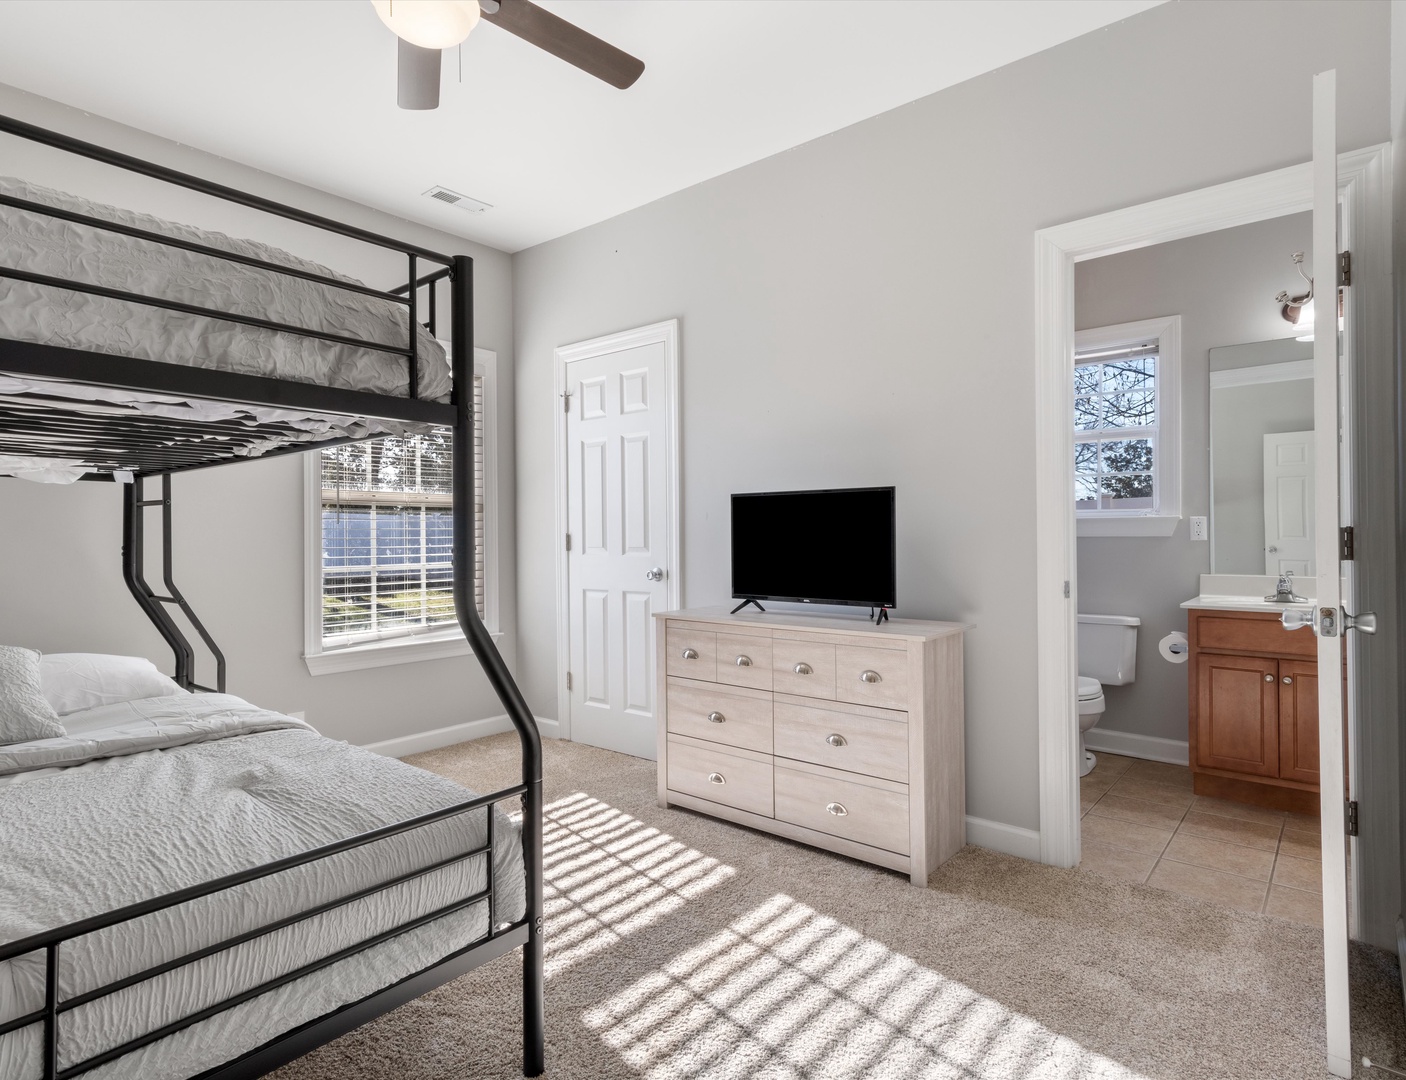 2nd floor - Bedroom 2 with Full/Queen bunk bed, Smart TV, and shared en-suite